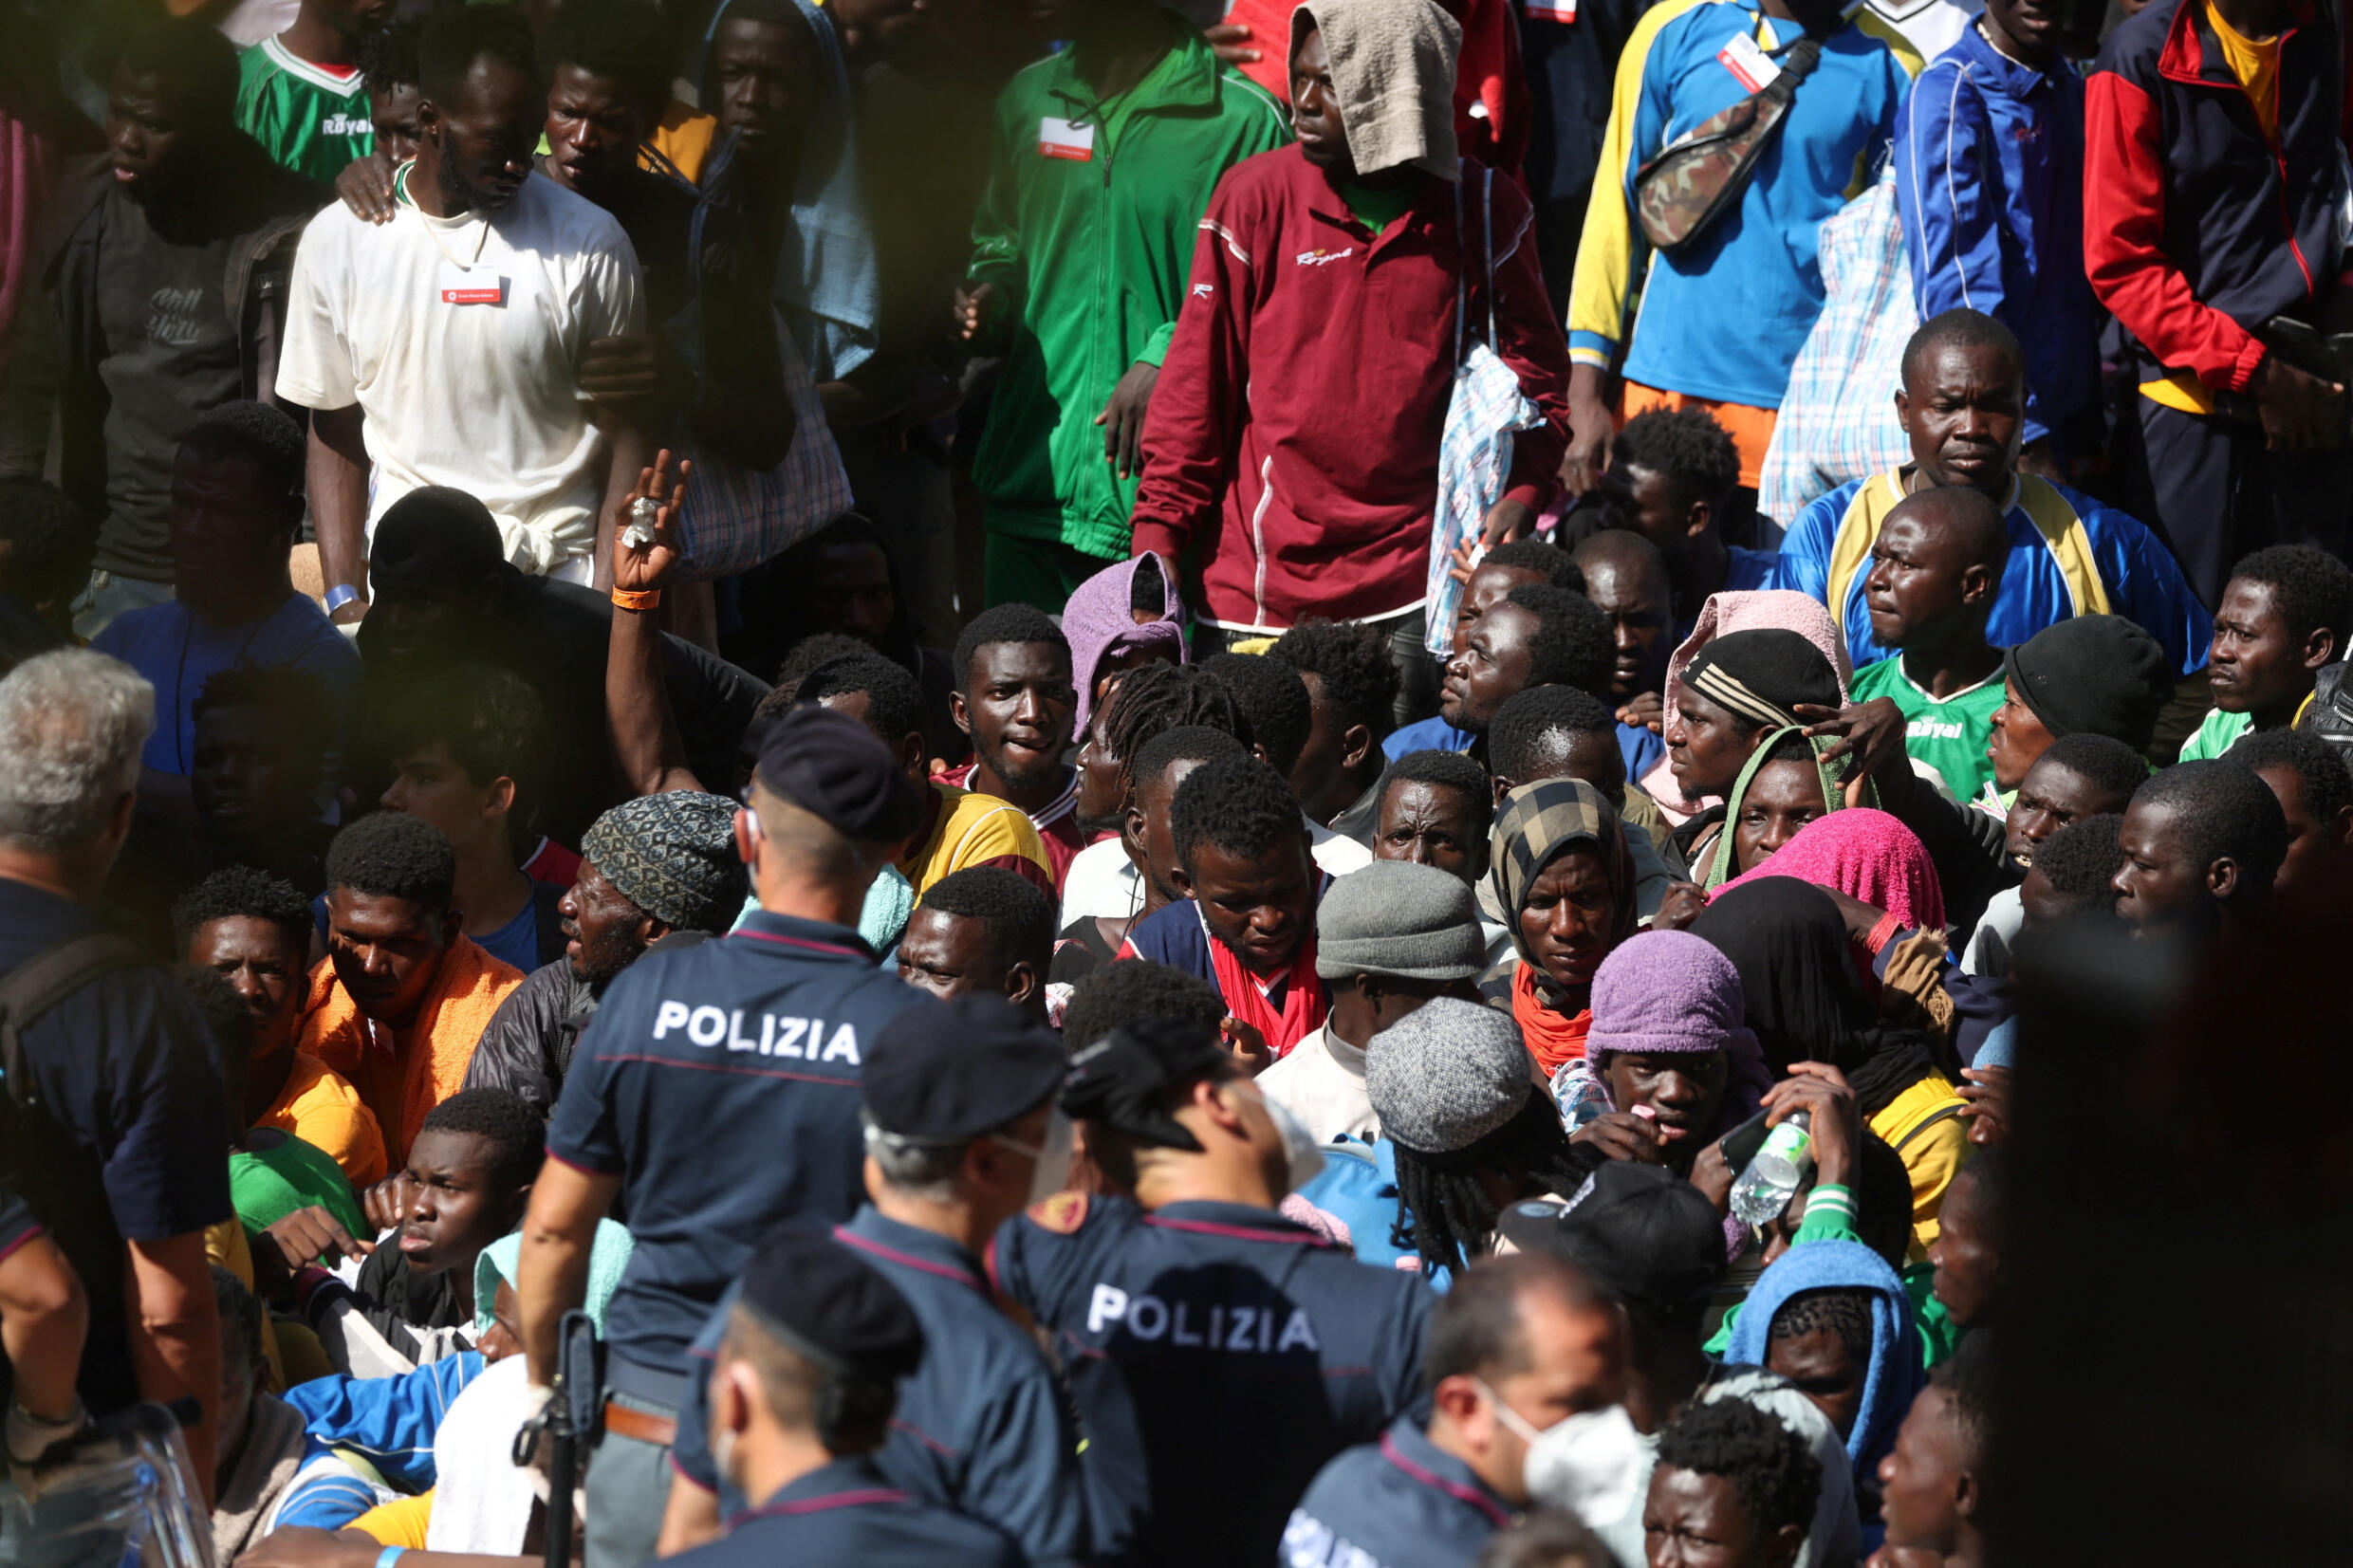 À Lampedusa, les évacuations de migrants font un peu retomber la pression